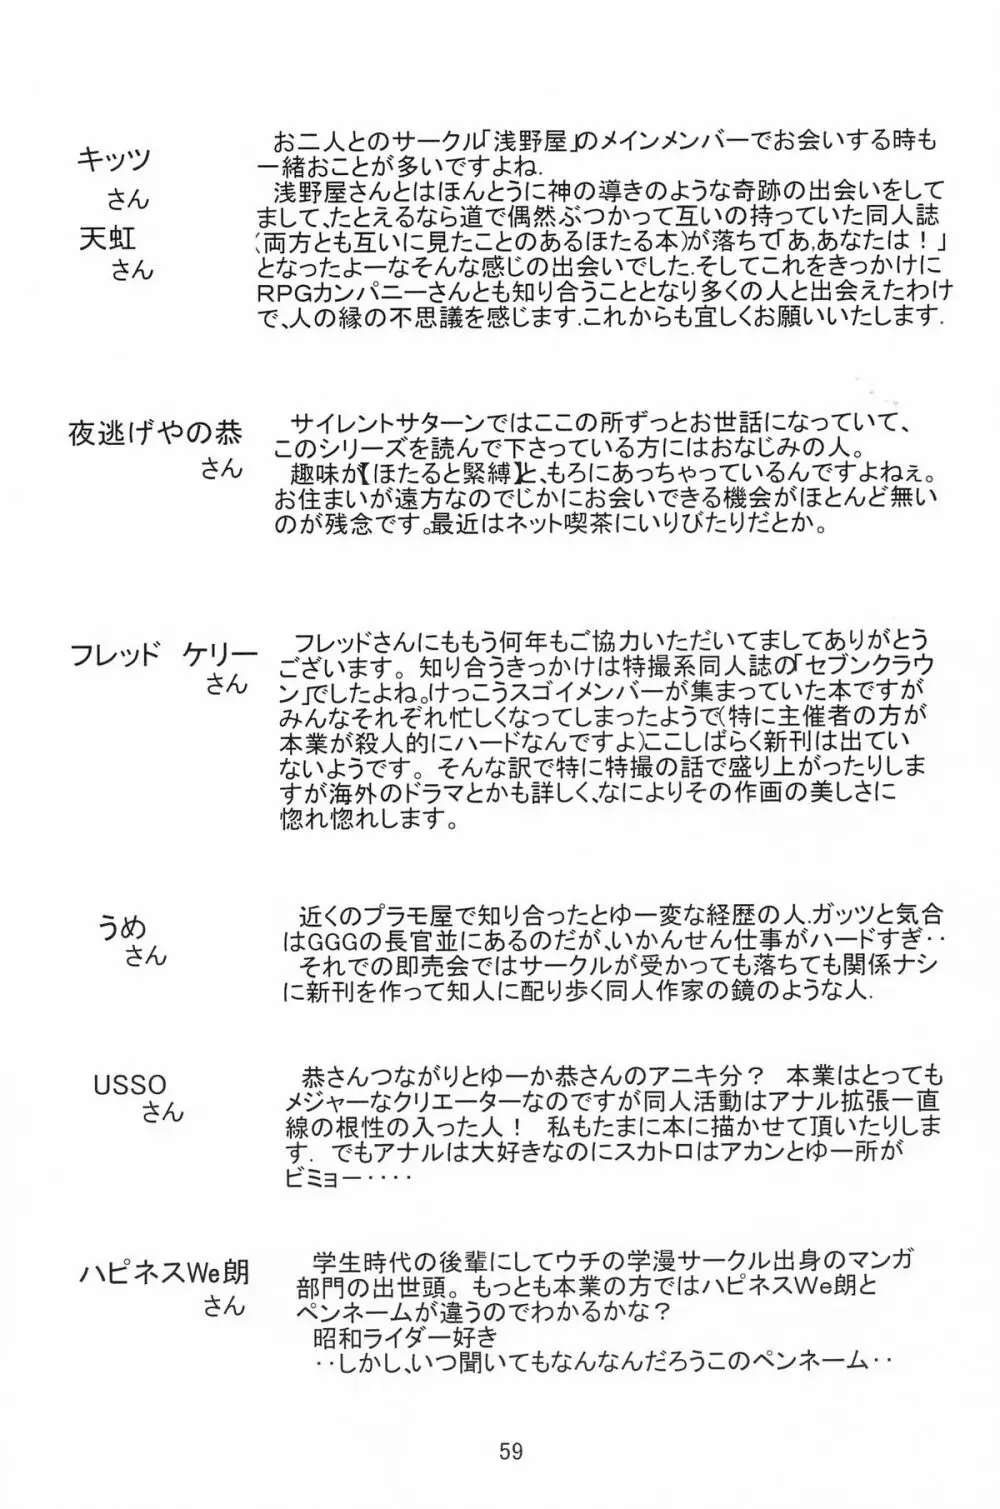 サターン降臨10周年記念本 サイレント・サターン スペシャル 60ページ